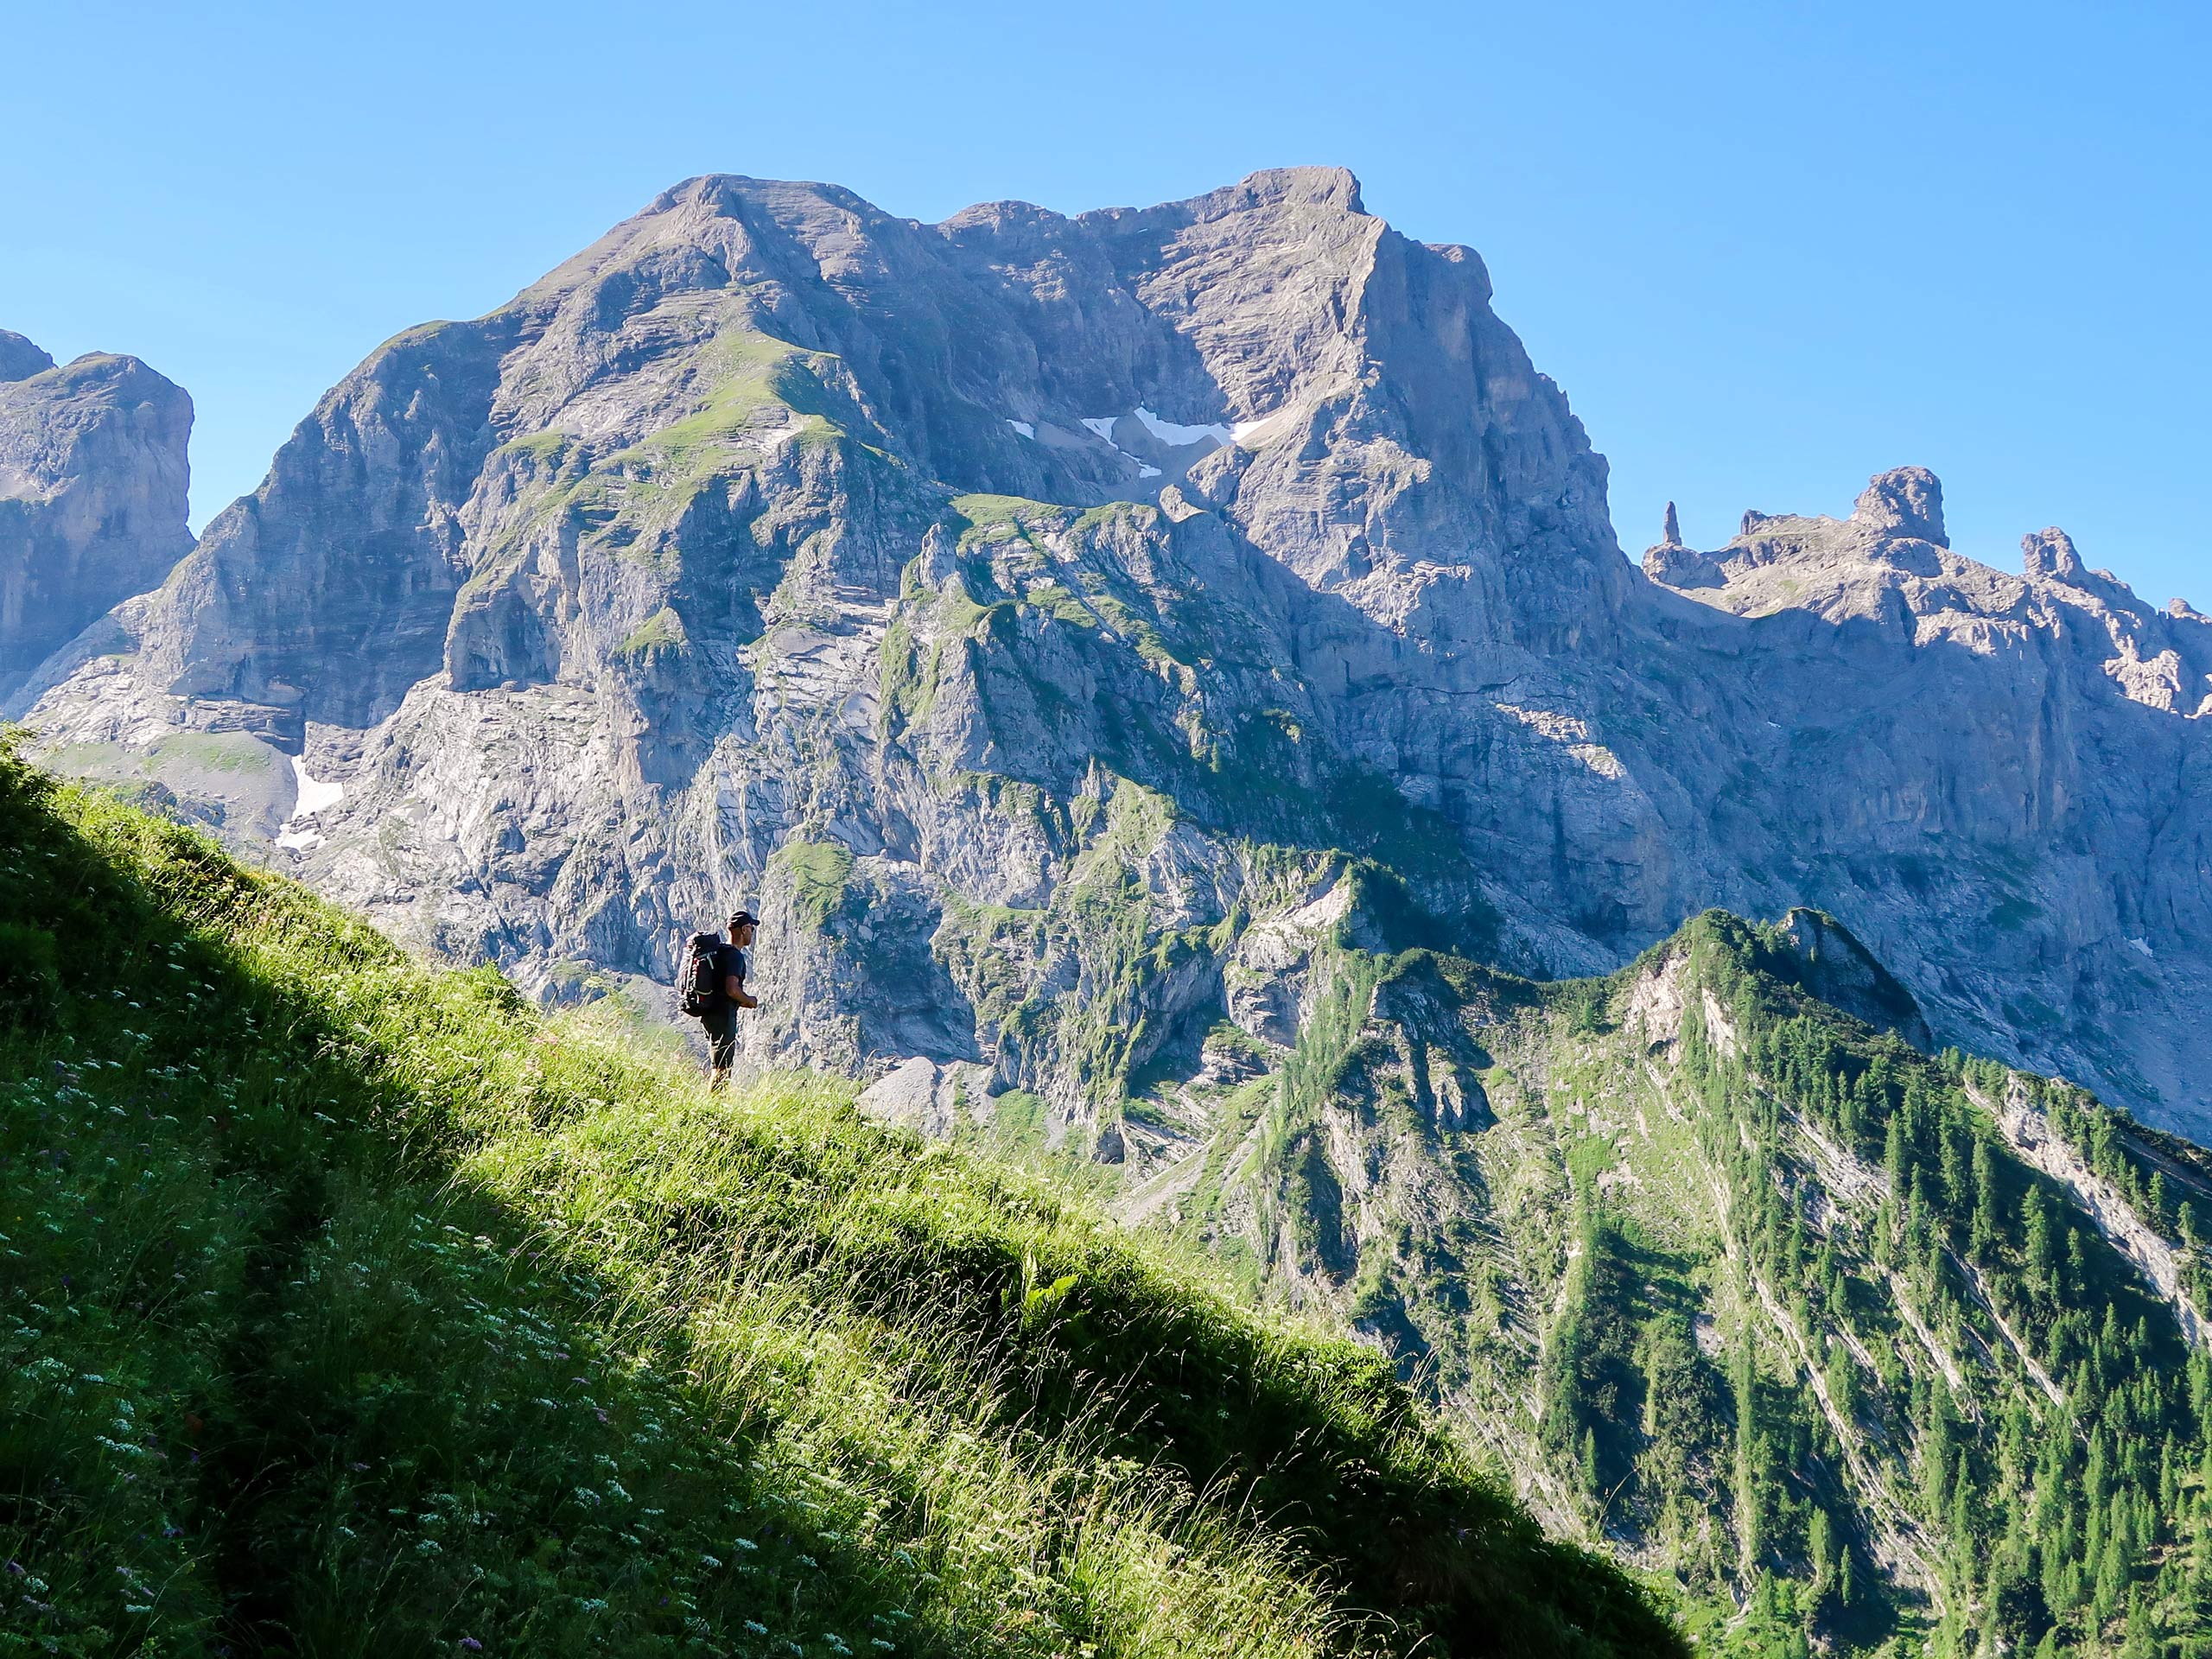 Dolomites hiking